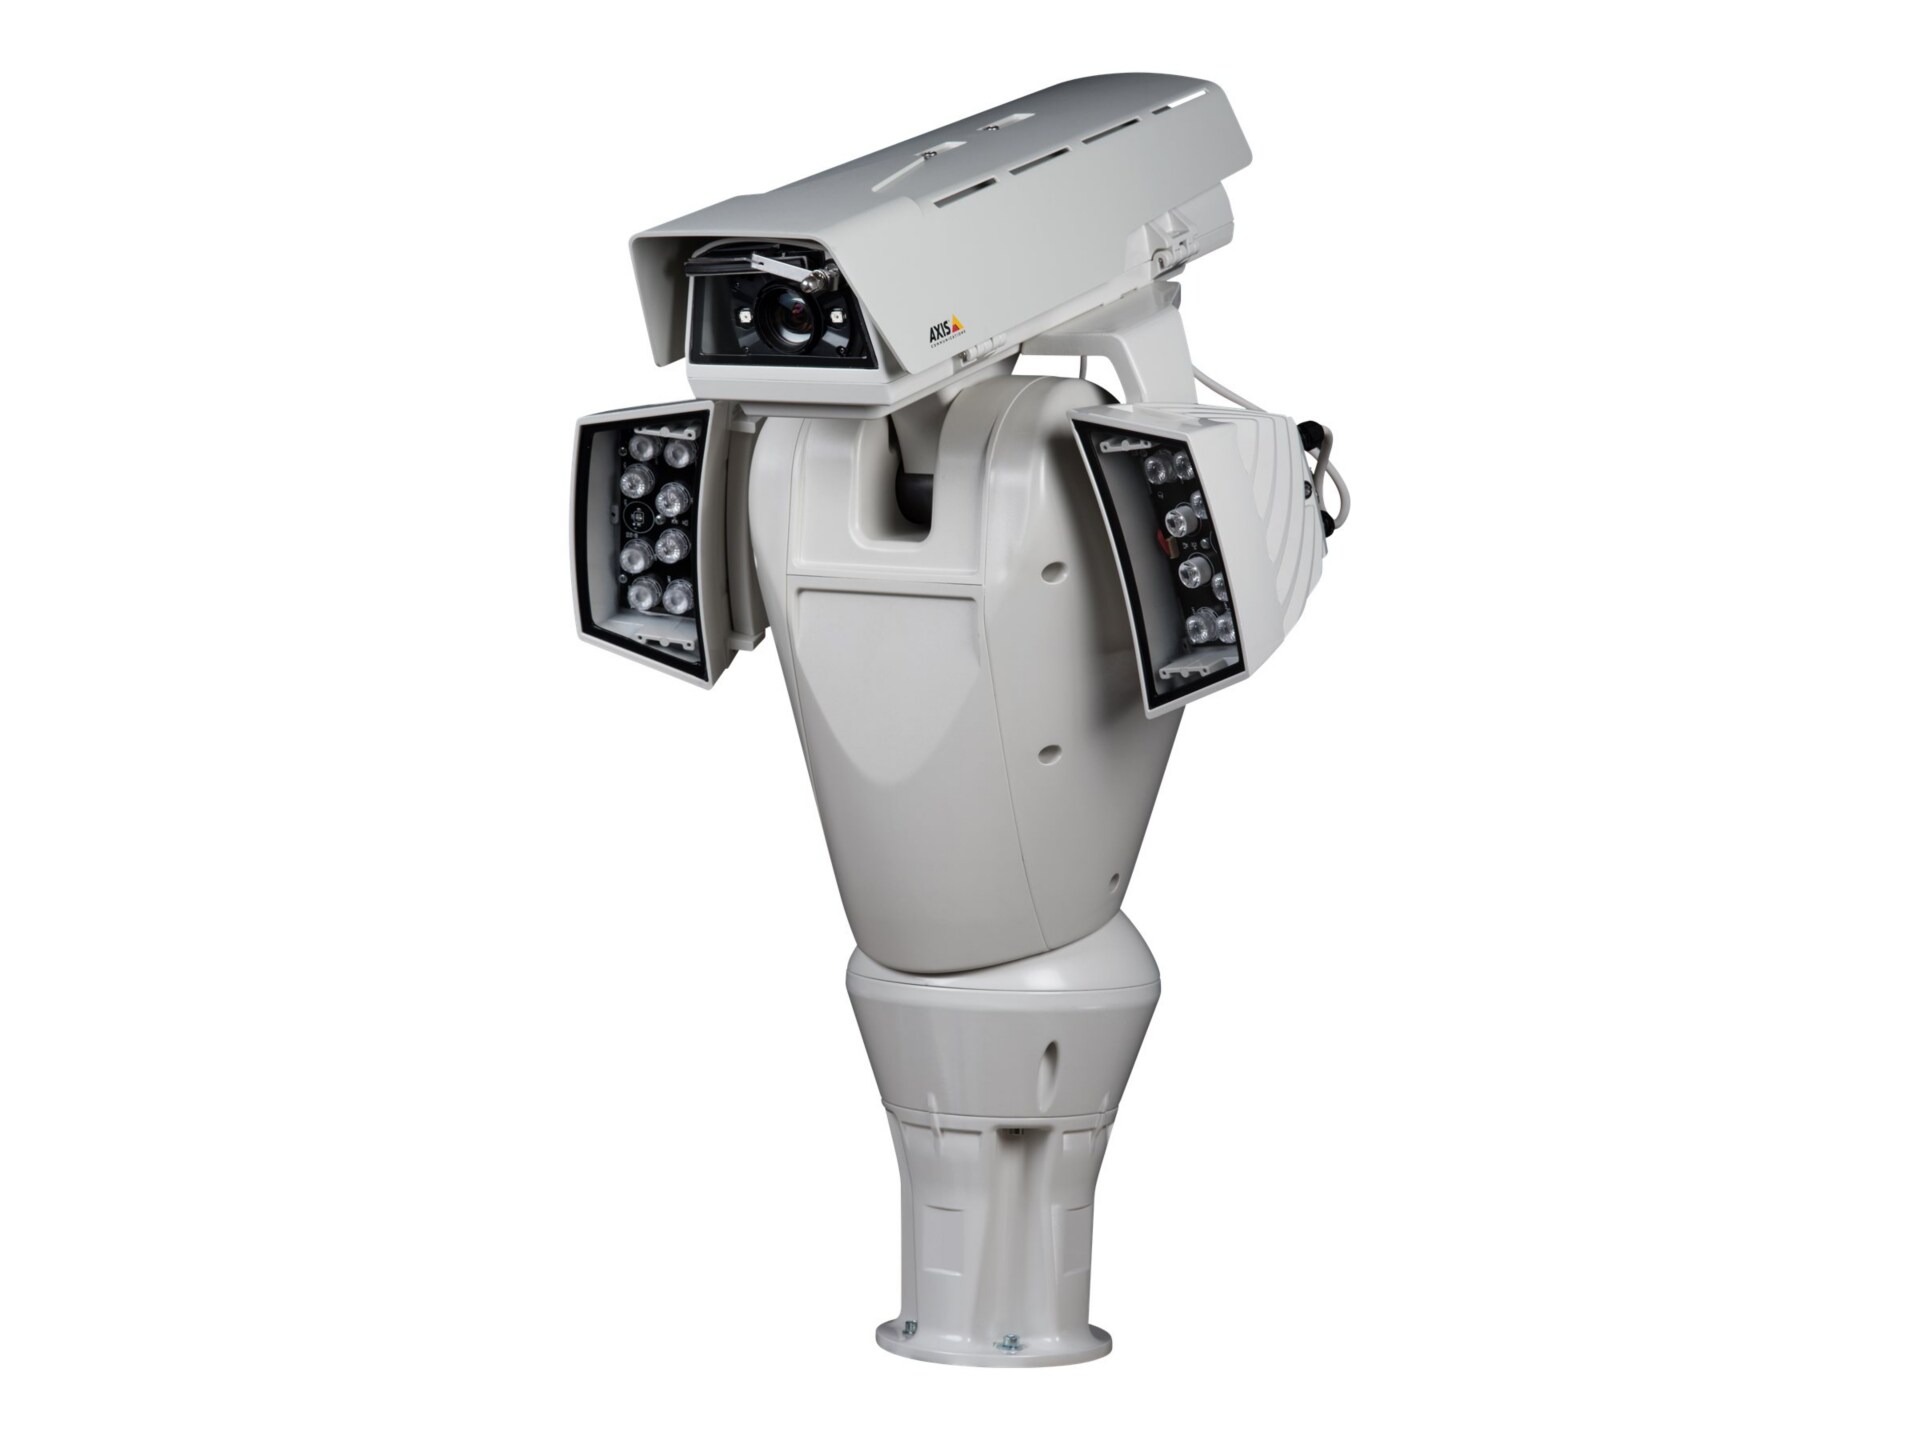 AXIS Q8665-LE PTZ Network Camera 120V - network surveillance camera